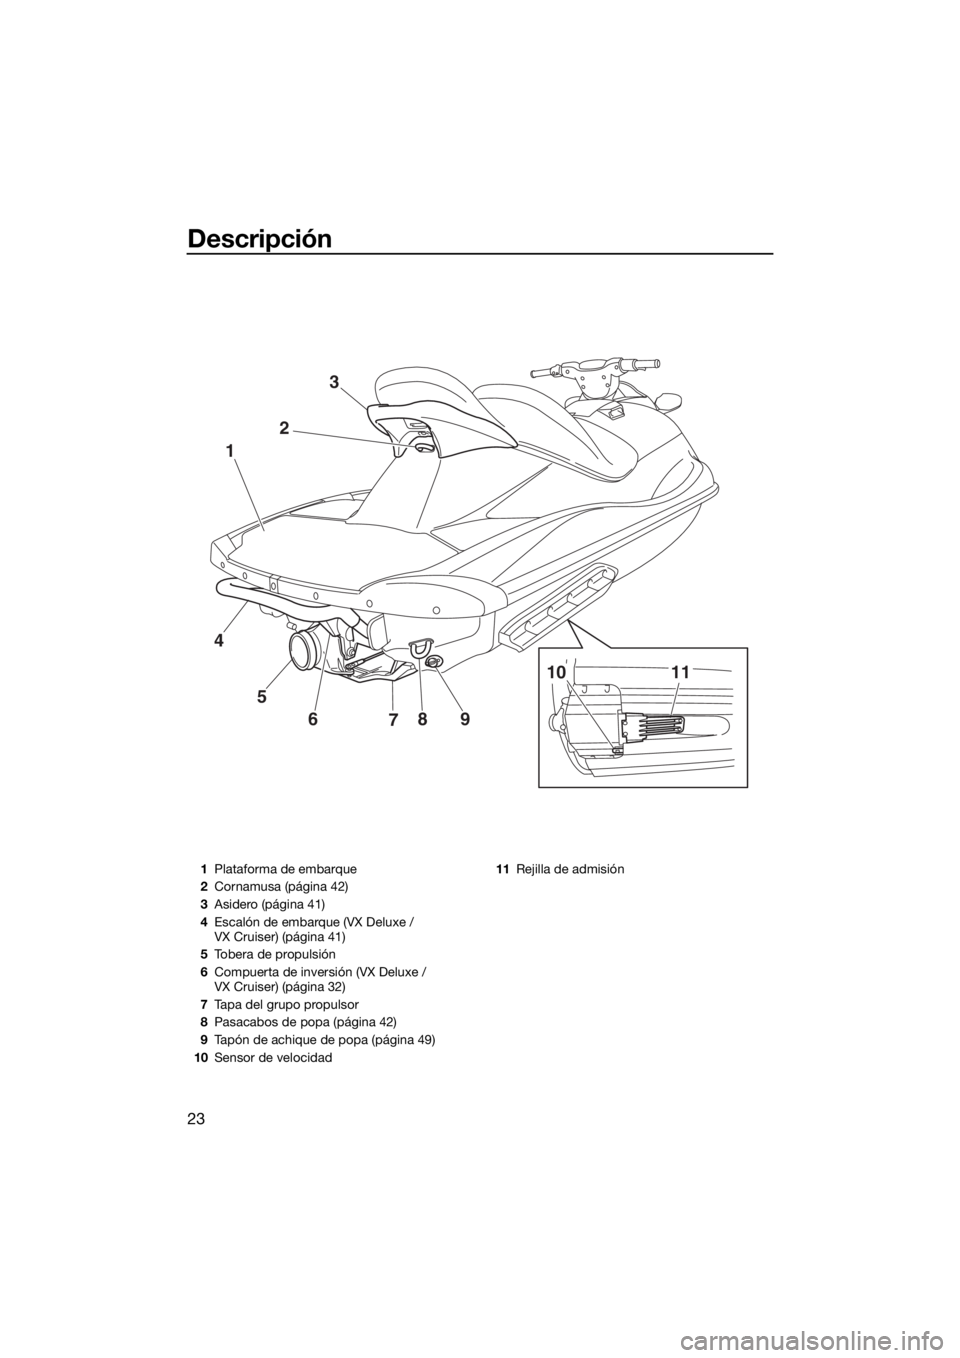 YAMAHA VX 2014  Manuale de Empleo (in Spanish) Descripción
23
9
8
7 6 5 4123
10 11
1Plataforma de embarque
2Cornamusa (página 42)
3Asidero (página 41)
4Escalón de embarque (VX Deluxe / 
VX Cruiser) (página 41)
5Tobera de propulsión
6Compuert